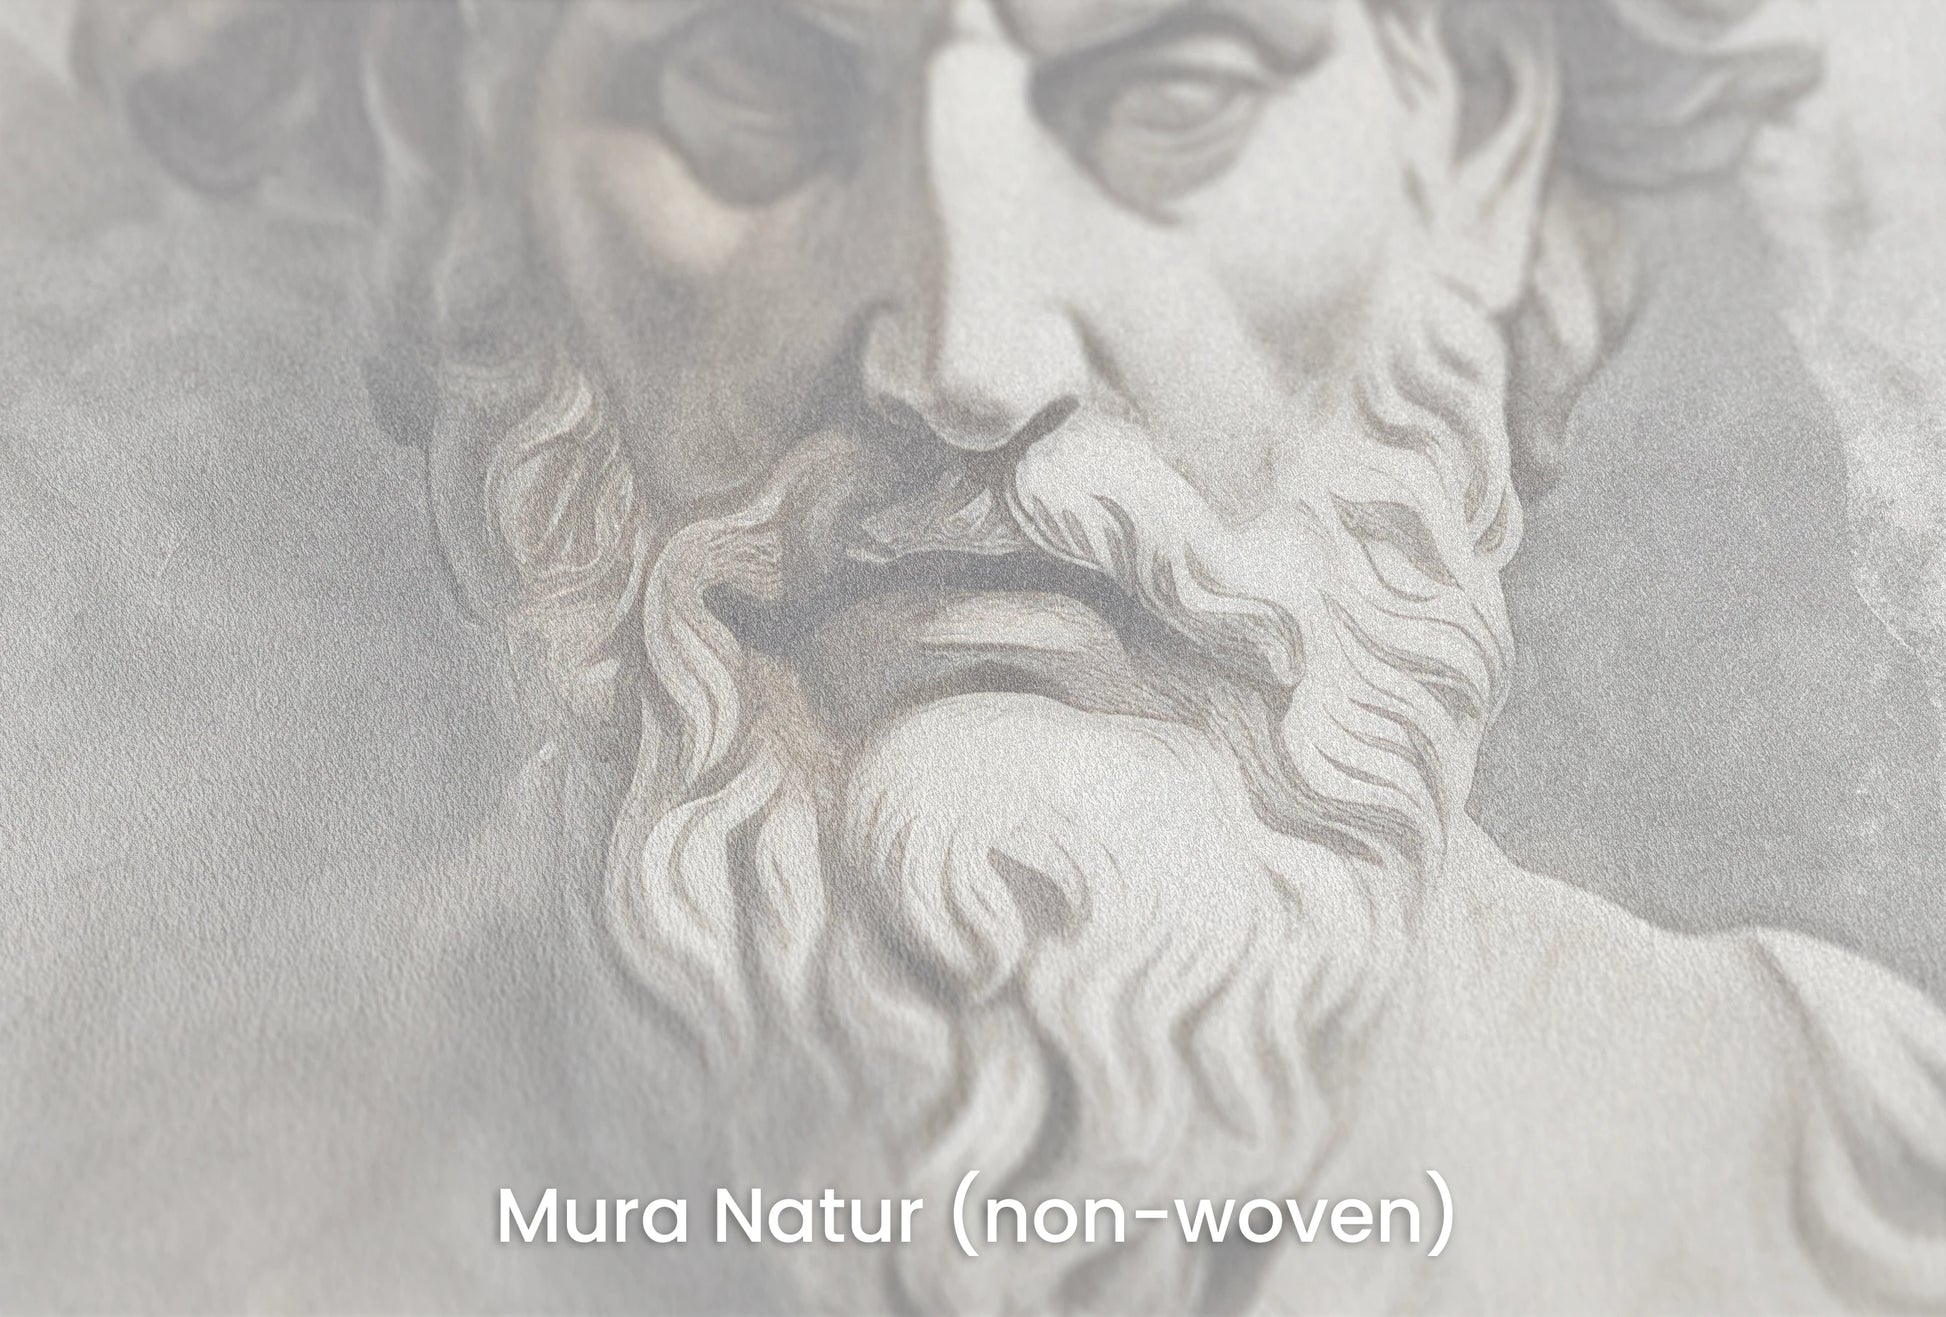 Zbliżenie na artystyczną fototapetę o nazwie Zeus's Majesty na podłożu Mura Natur (non-woven) - naturalne i ekologiczne podłoże.